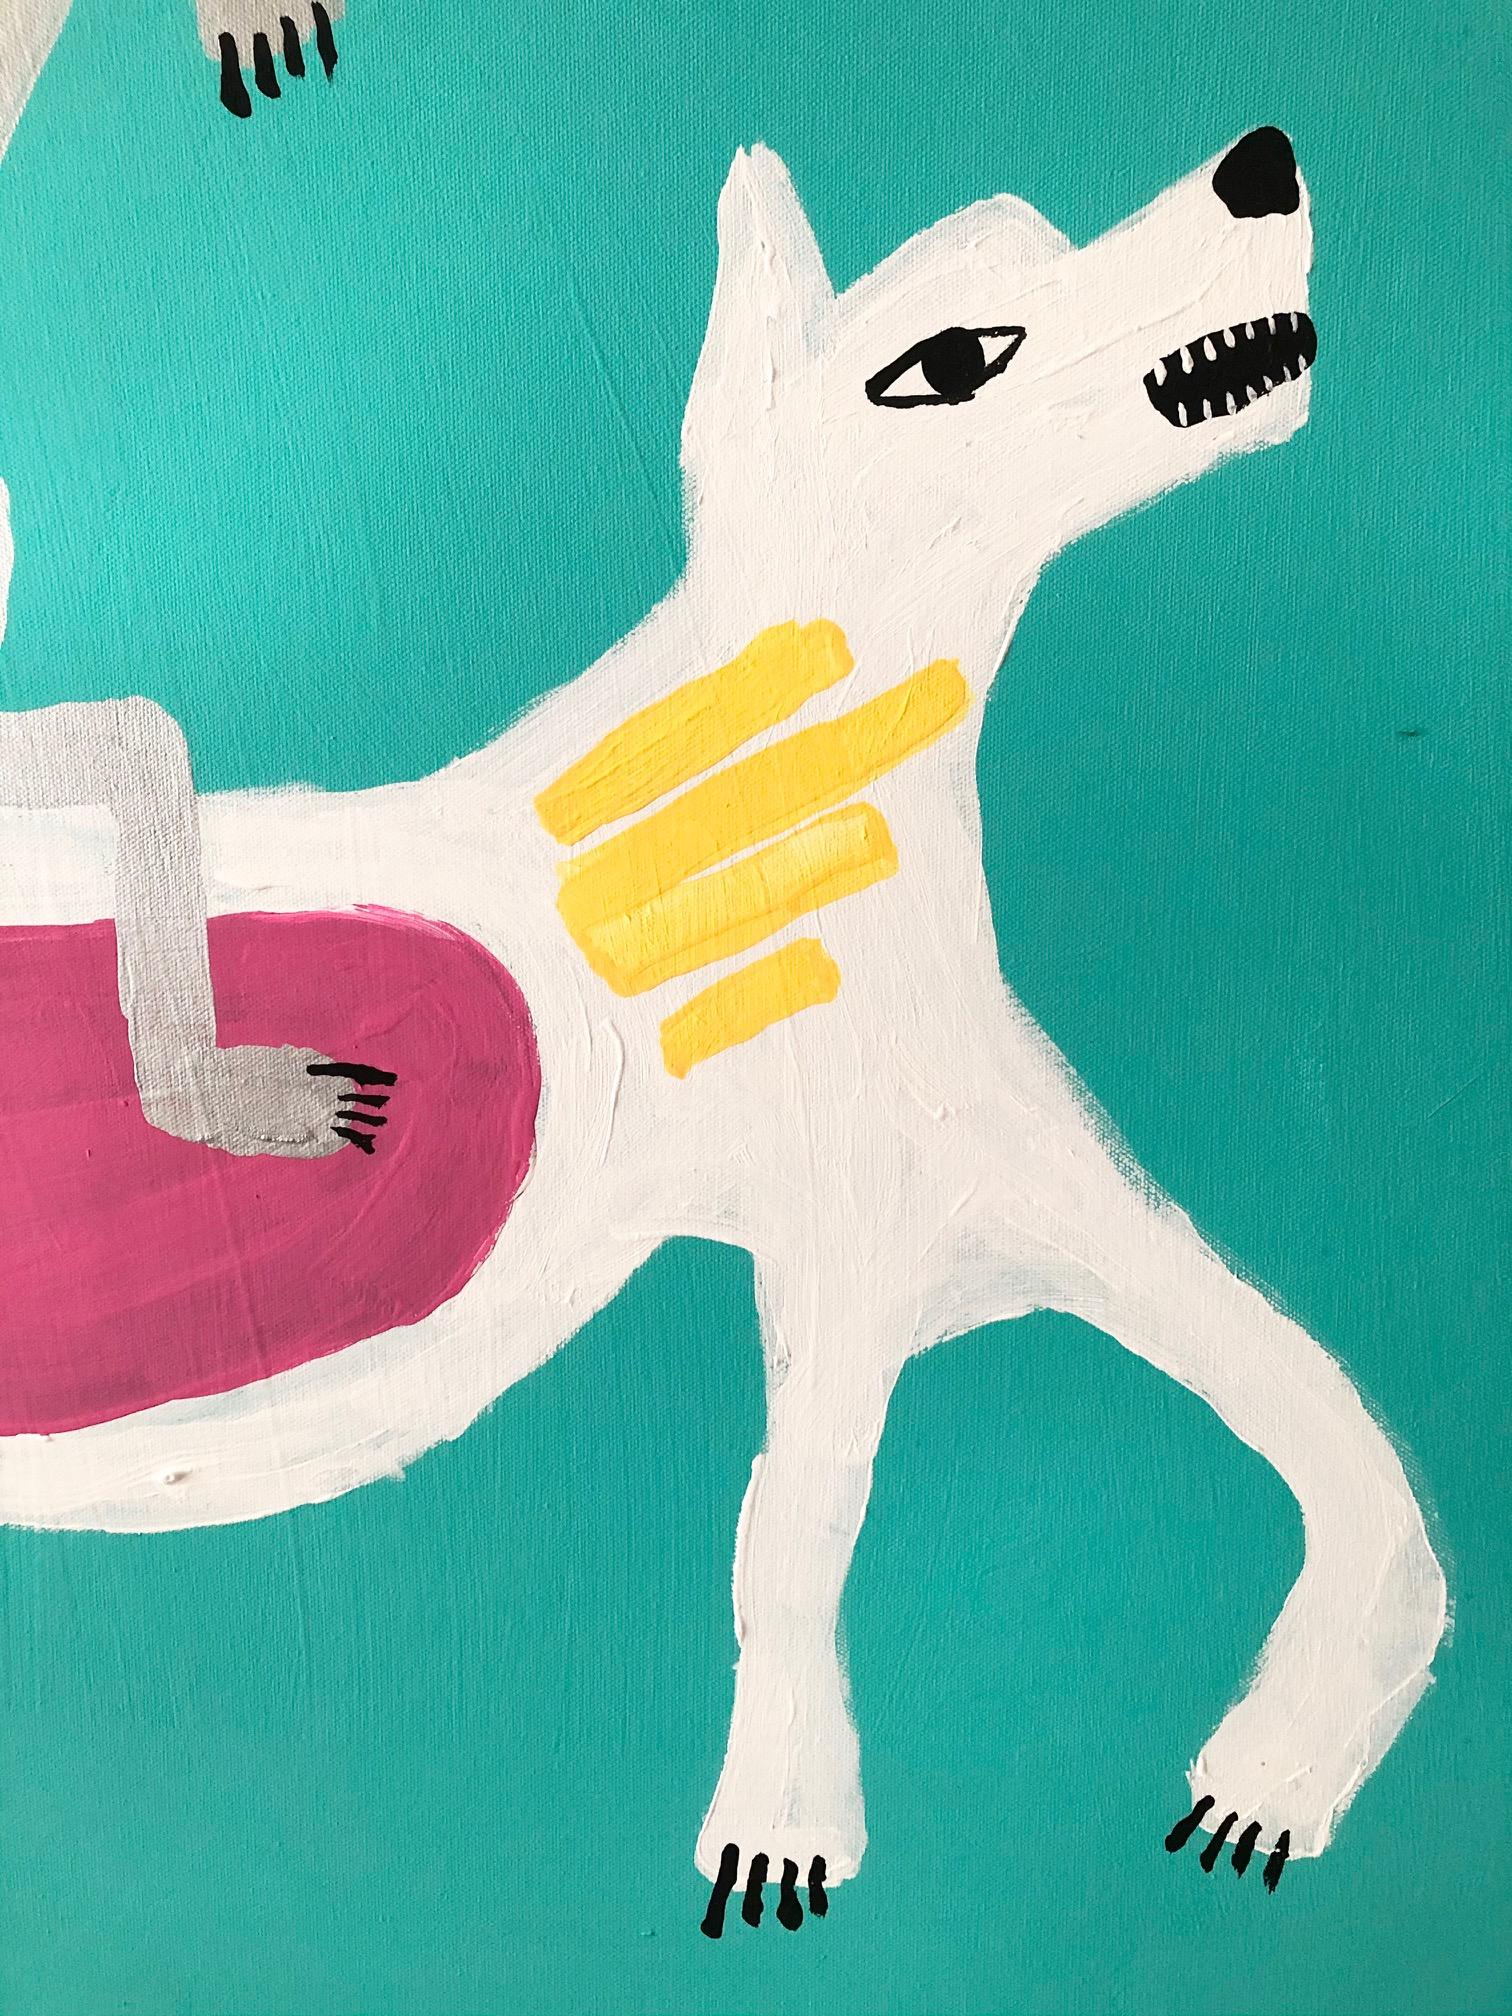 Jolly Rider ist ein originales, einzigartiges, zeitgenössisches Fanciful Inuit-Gemälde in Acryl auf Leinwand. Kräftige Farbkleckse harmonieren in diesem einzigartigen, zeitgenössischen Kunstwerk von Floyd Kaputana. Signiert recto und verso der